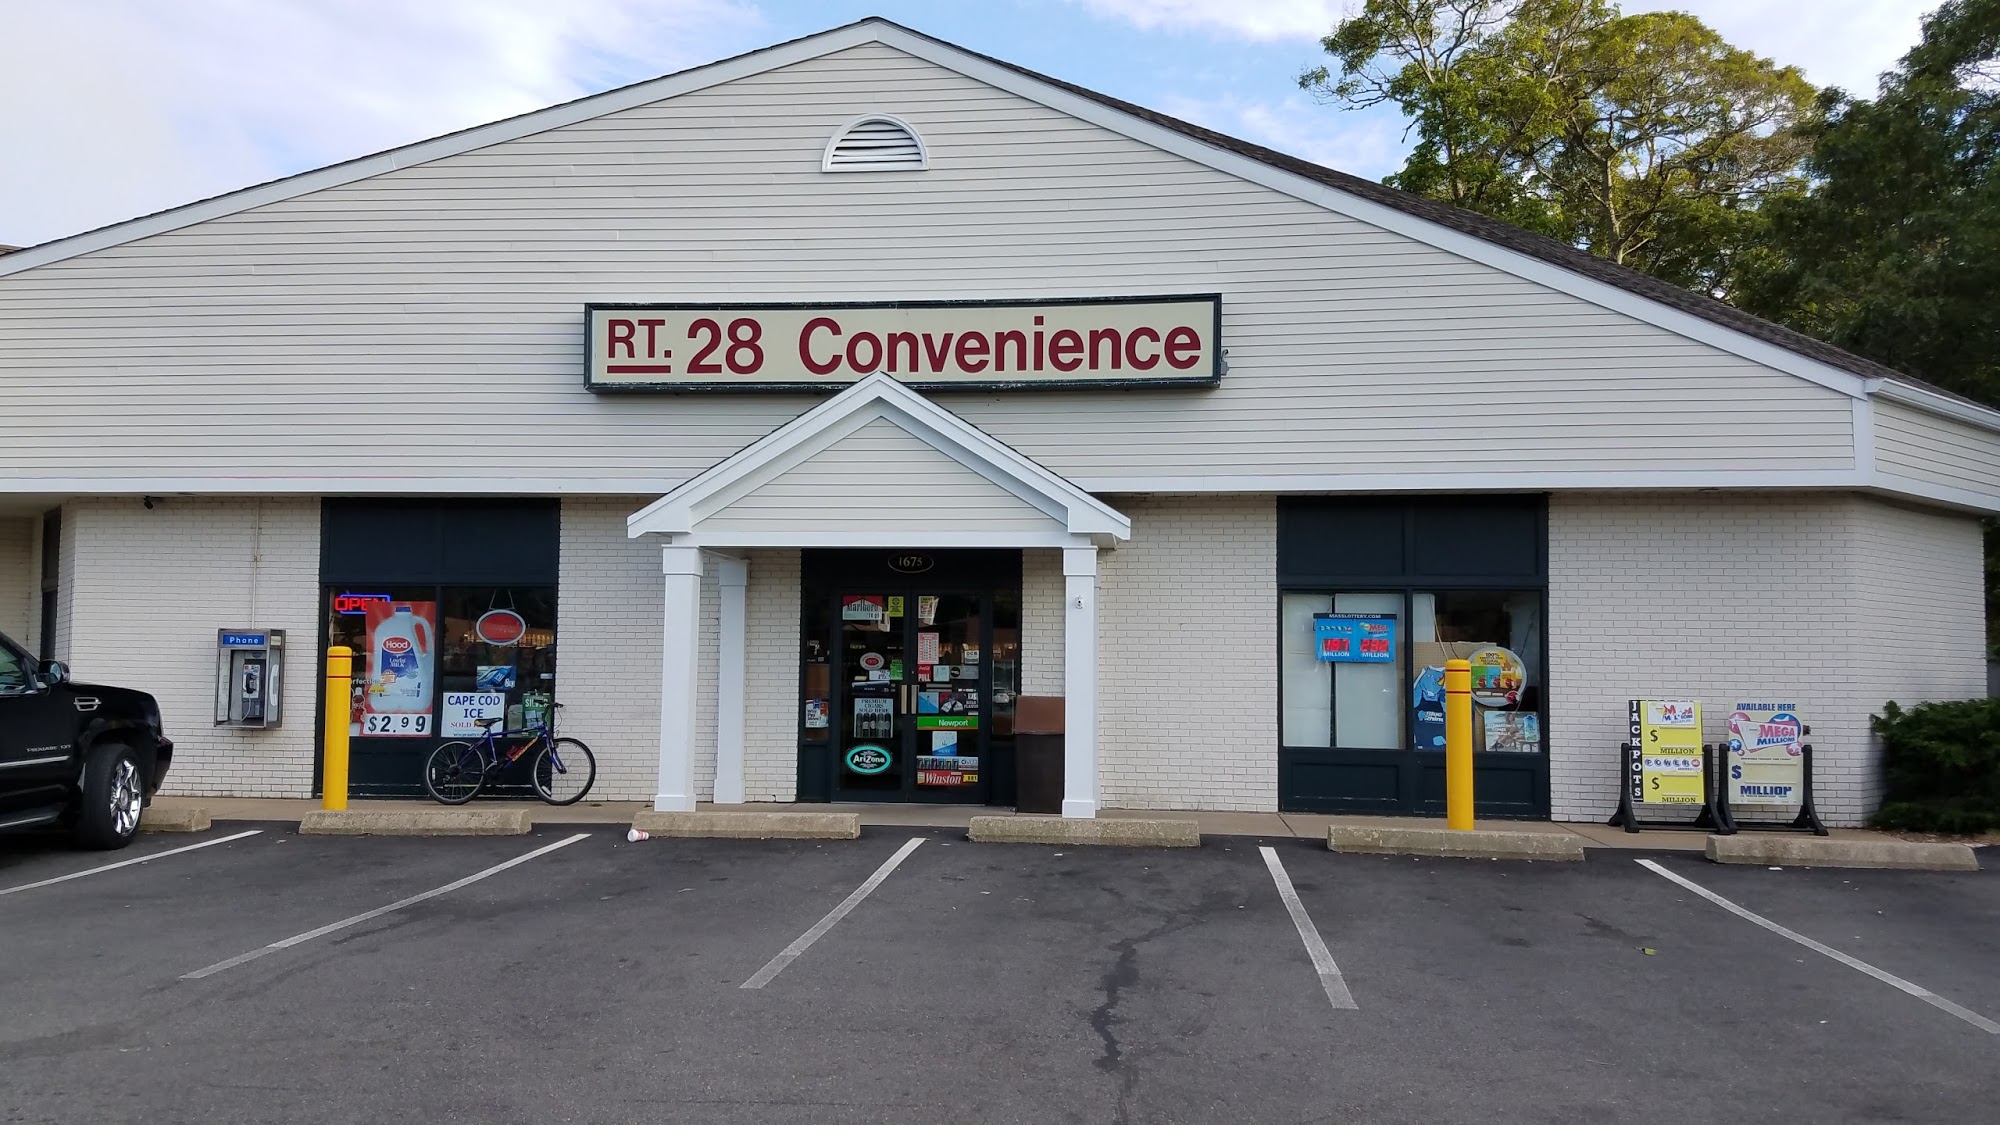 Route 28 Convenience